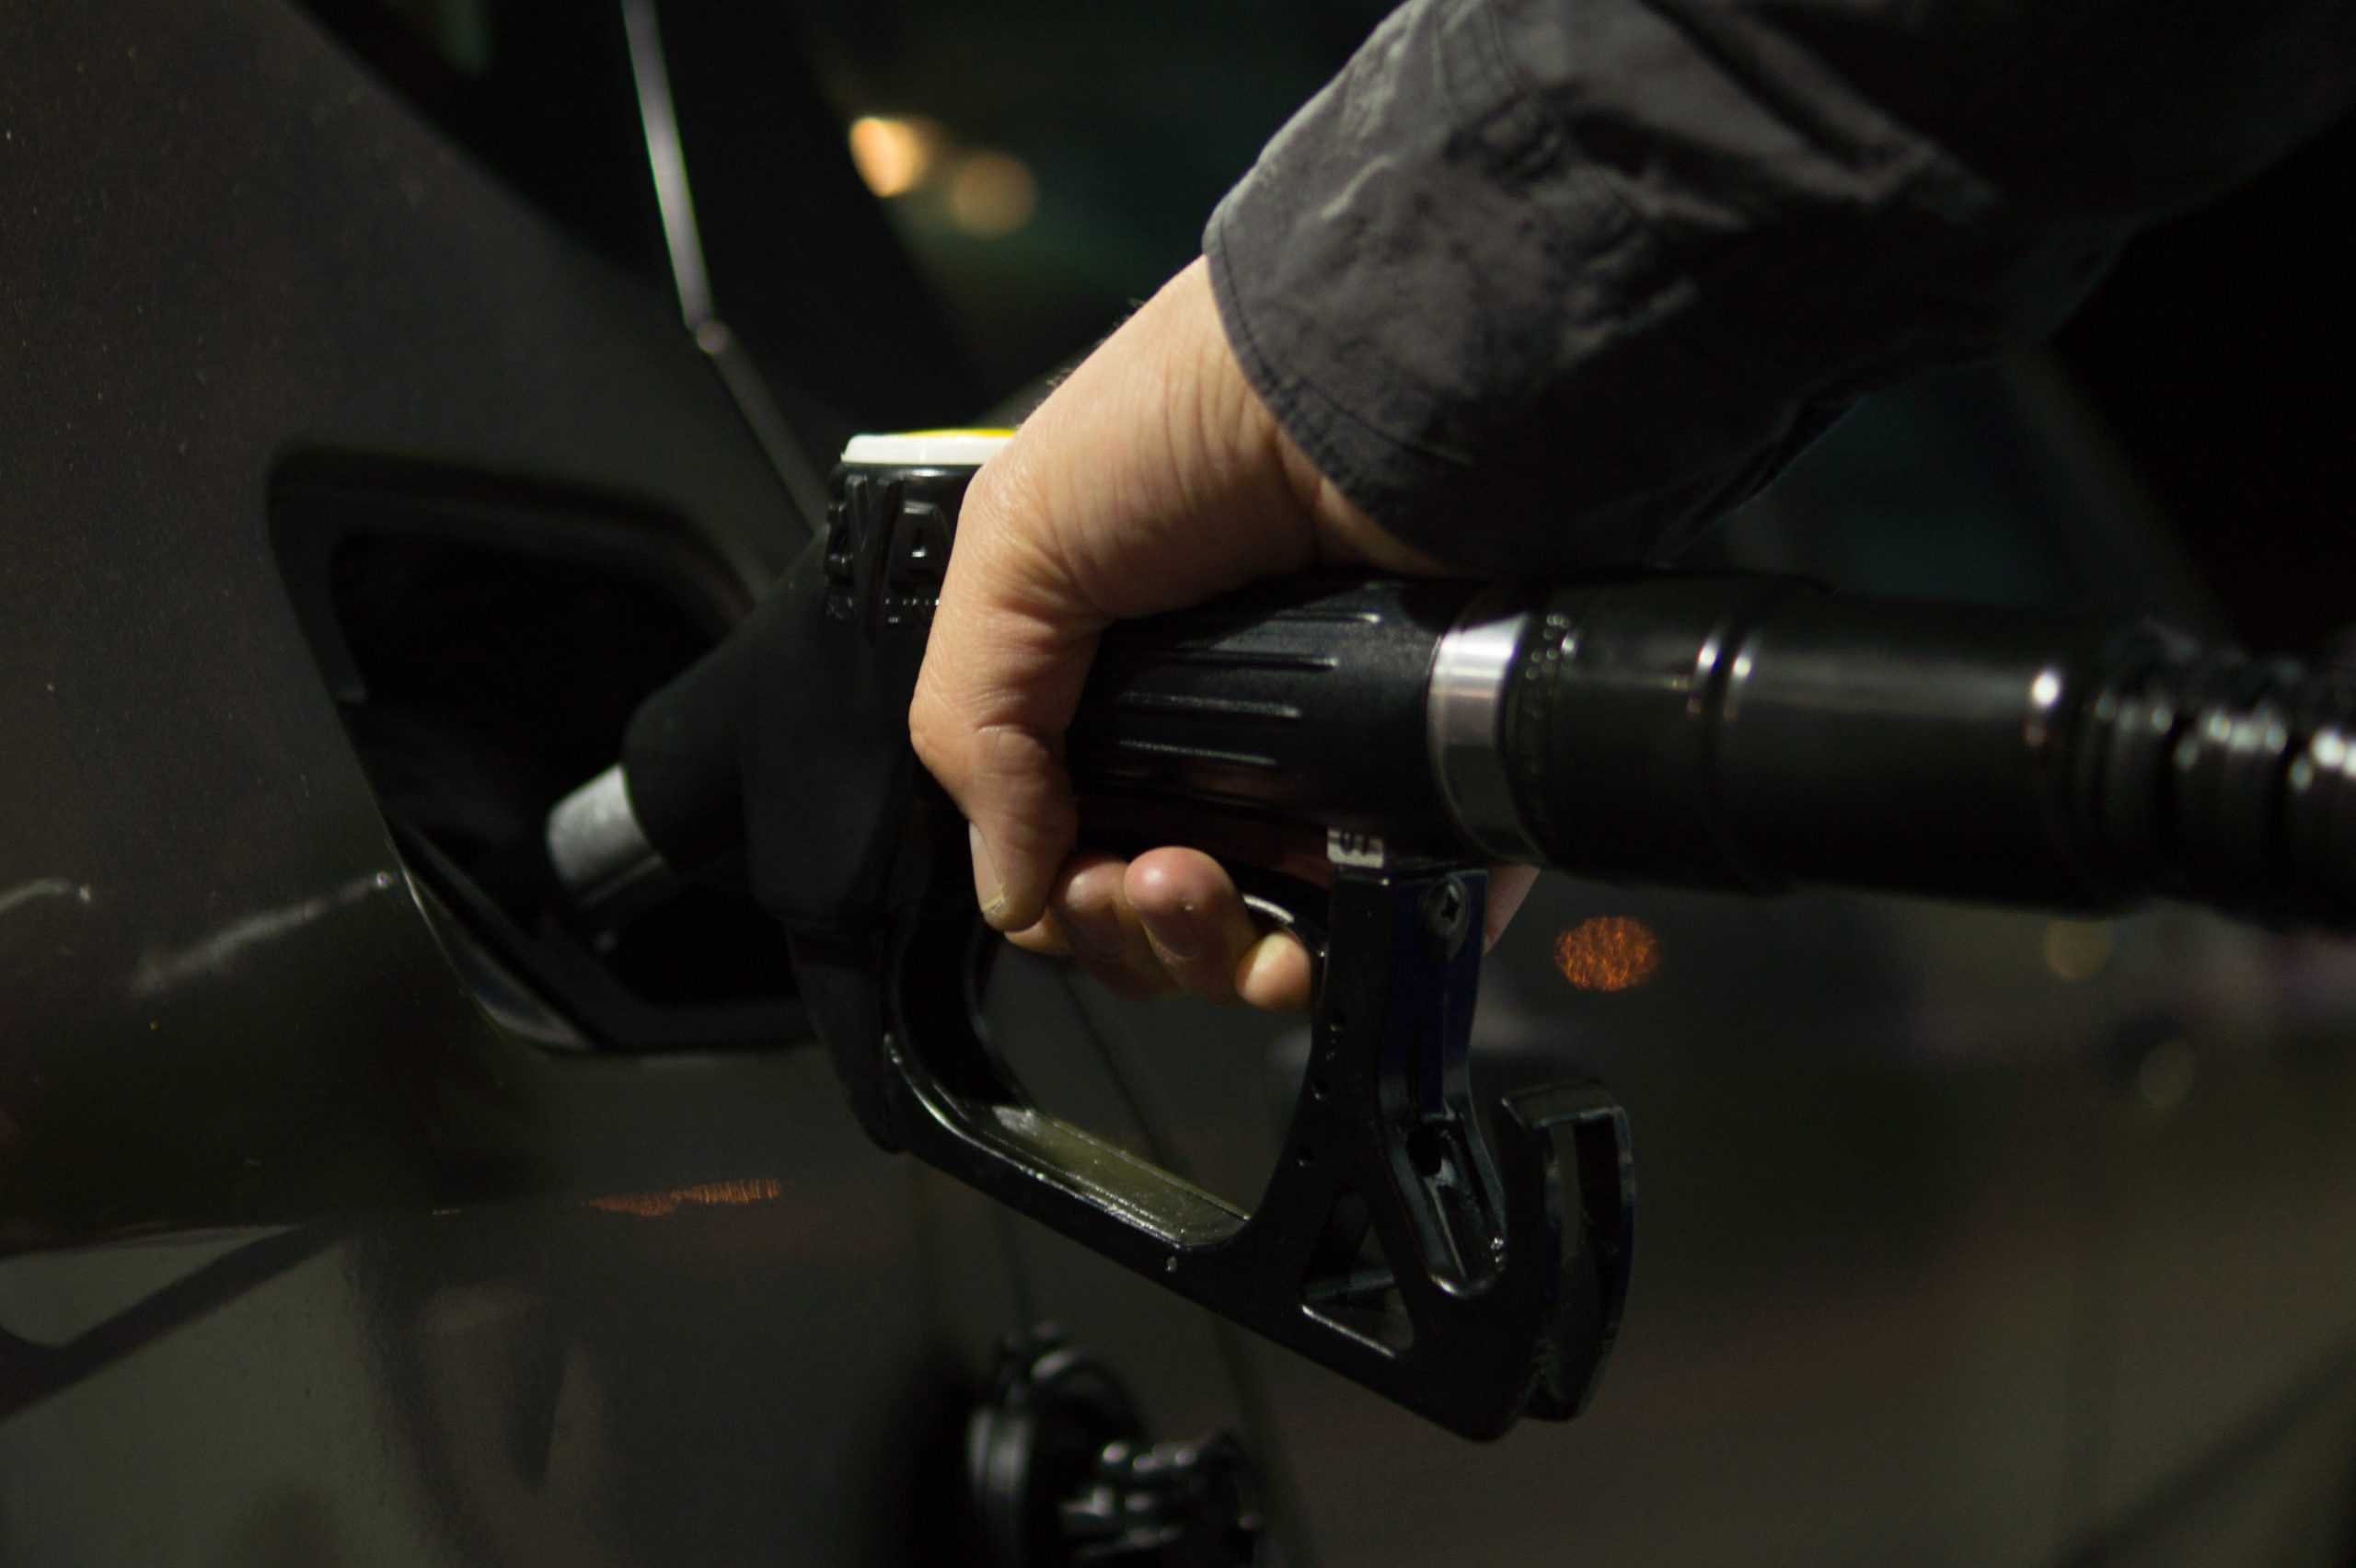 Mudanças nos preços dos combustíveis e como elas impactam o bolso dos cearenses